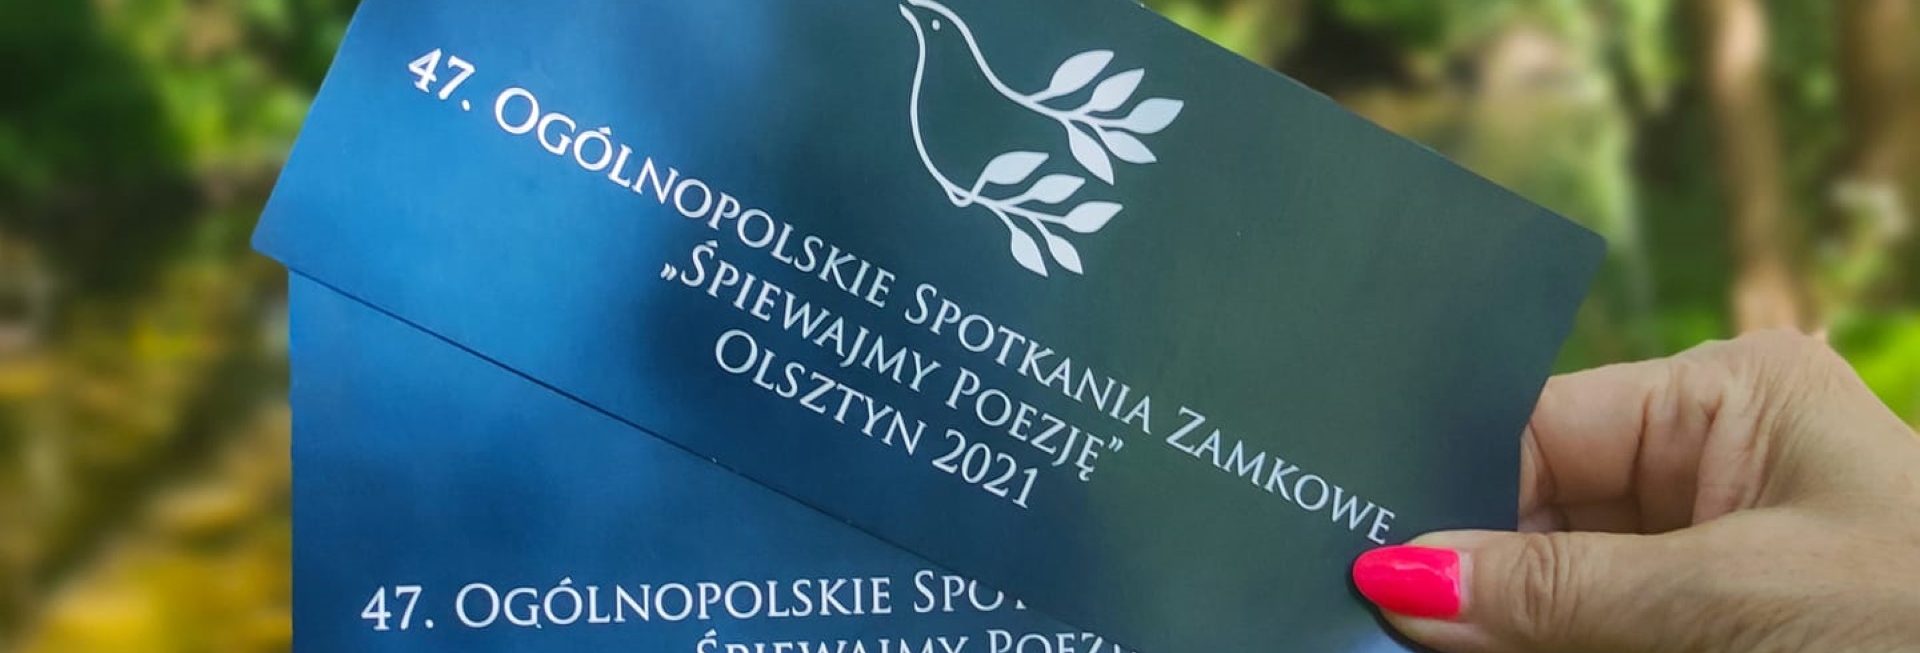 Zdjęcie zapraszające do Olsztyna na cykliczna imprezę 47. edycję Ogólnopolskie Spotkania Zamkowe „Śpiewajmy Poezję” Olsztyn 2021. Na zdjęciu damska ręka trzymająca dwie wejściówki z logiem i napisami festiwalu.